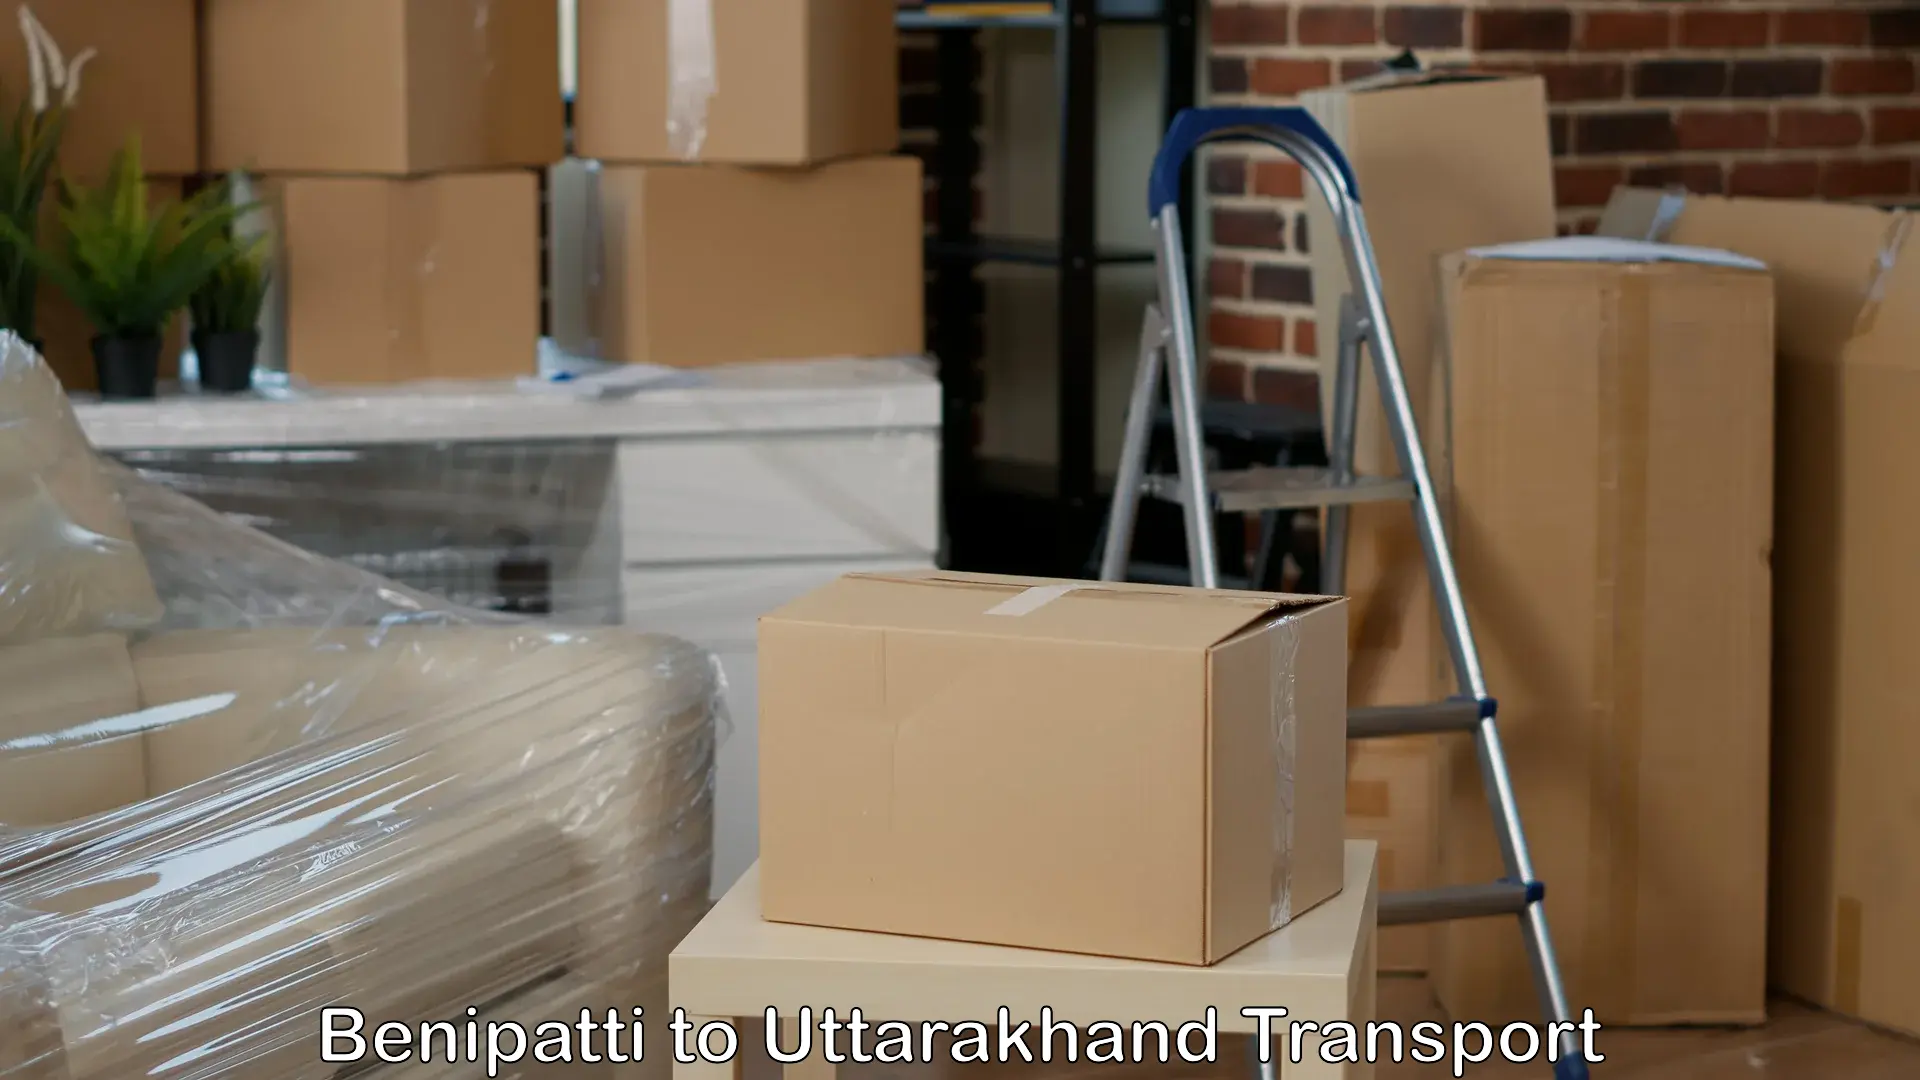 Furniture transport service Benipatti to Kotdwara